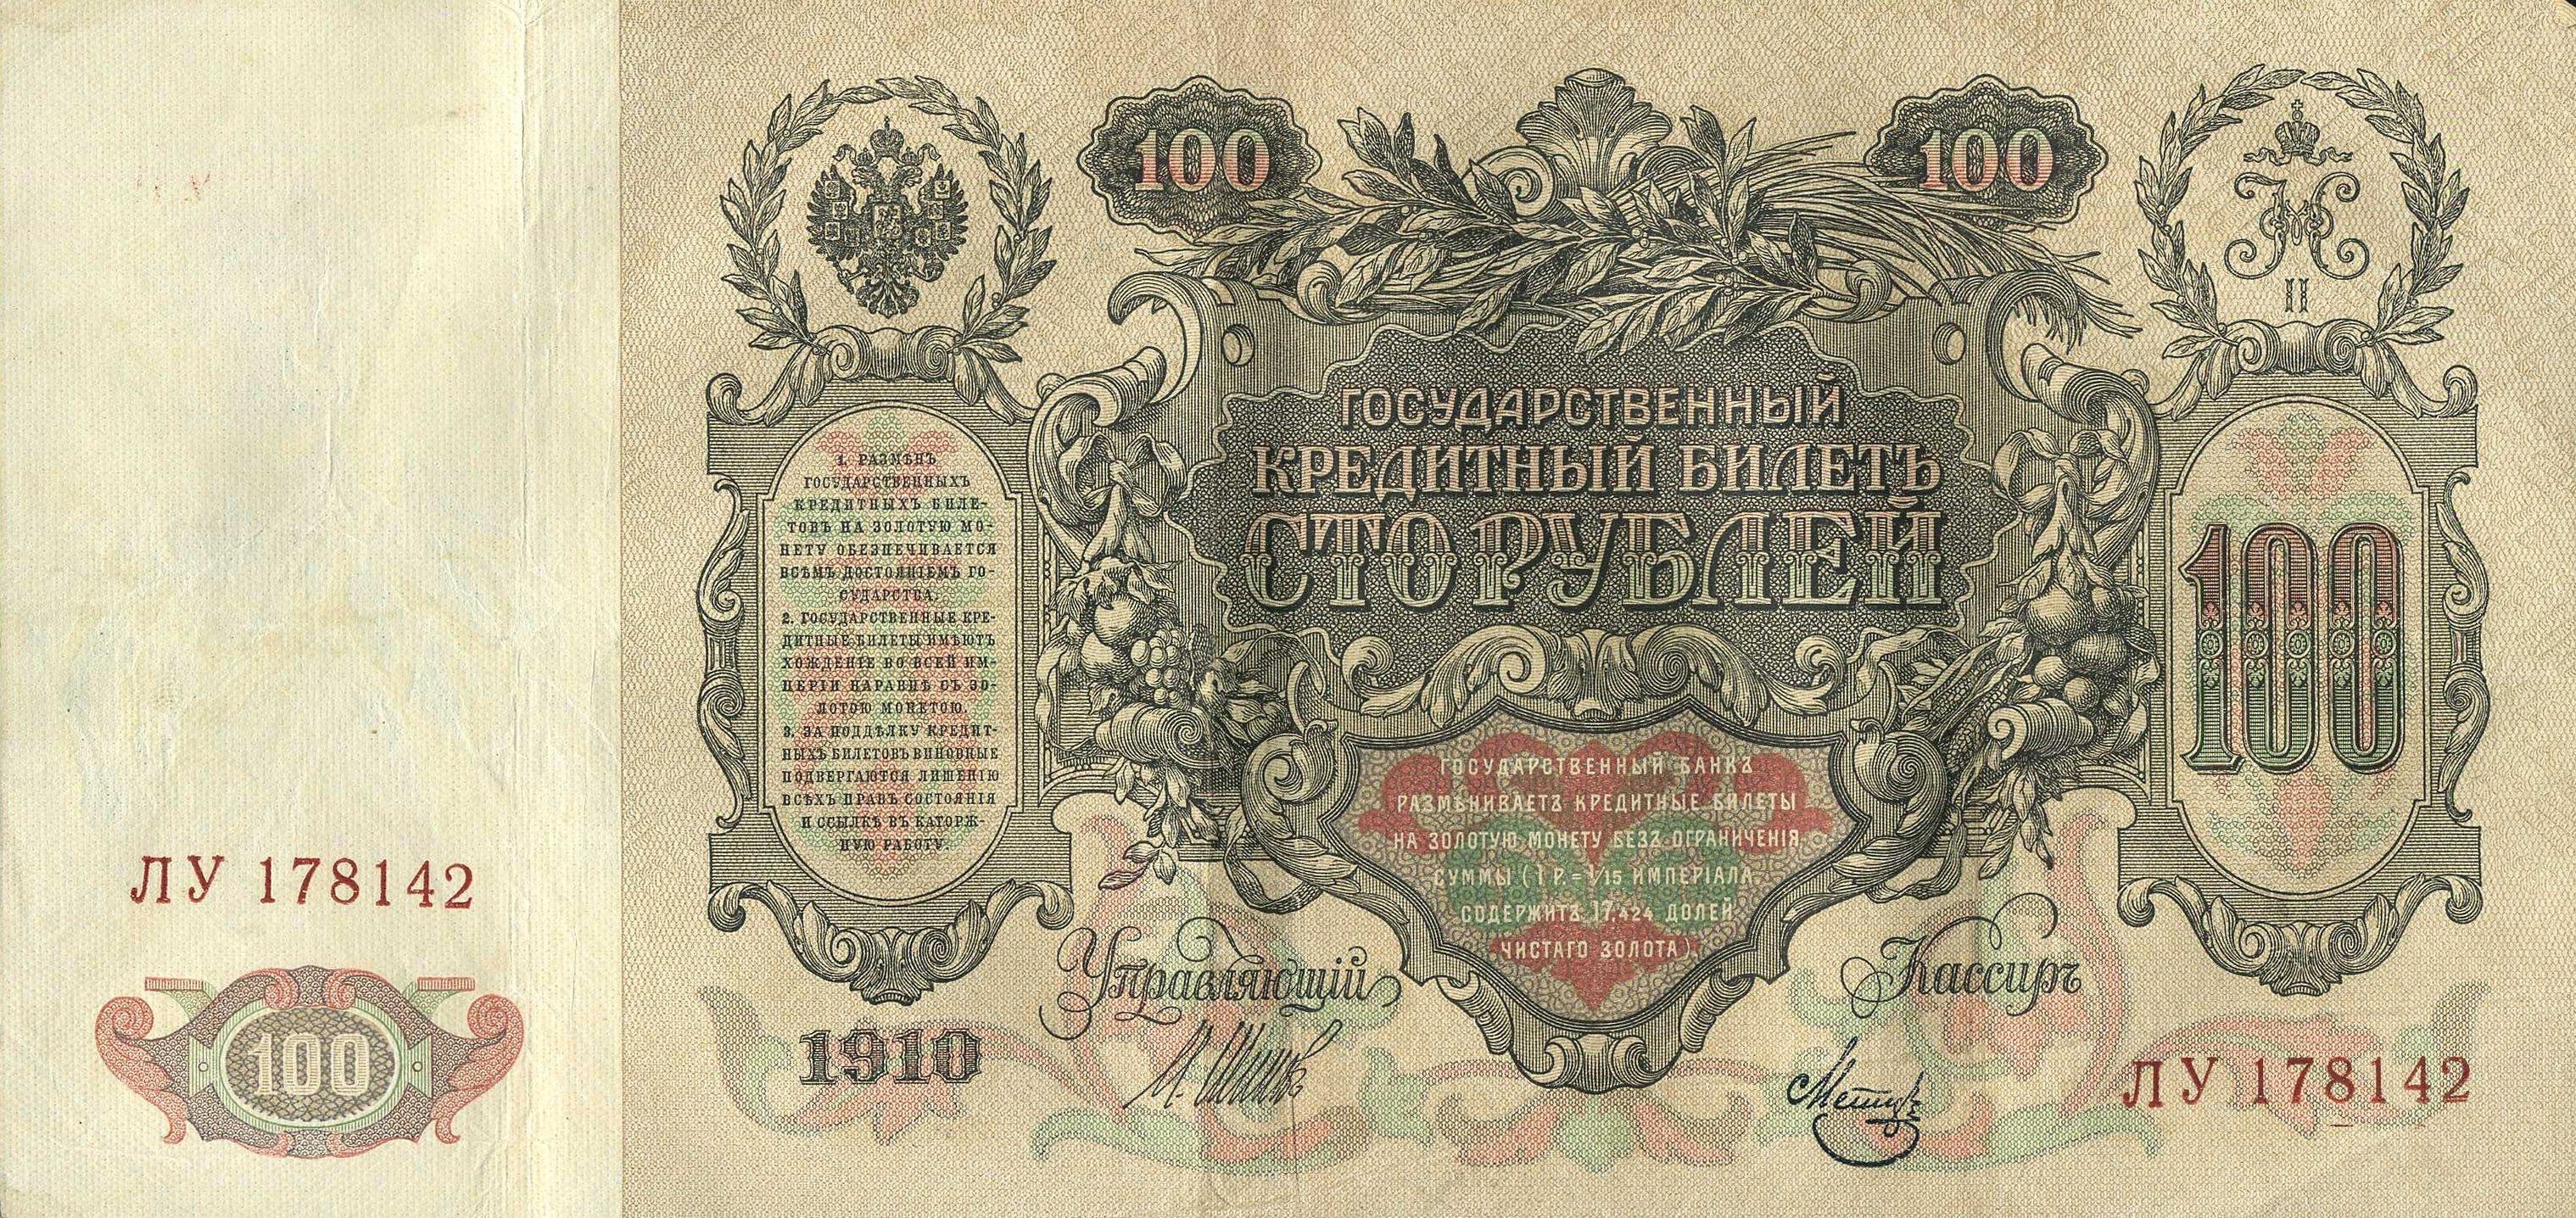 100 Rubel Banknote "Katharina die Große" 1910